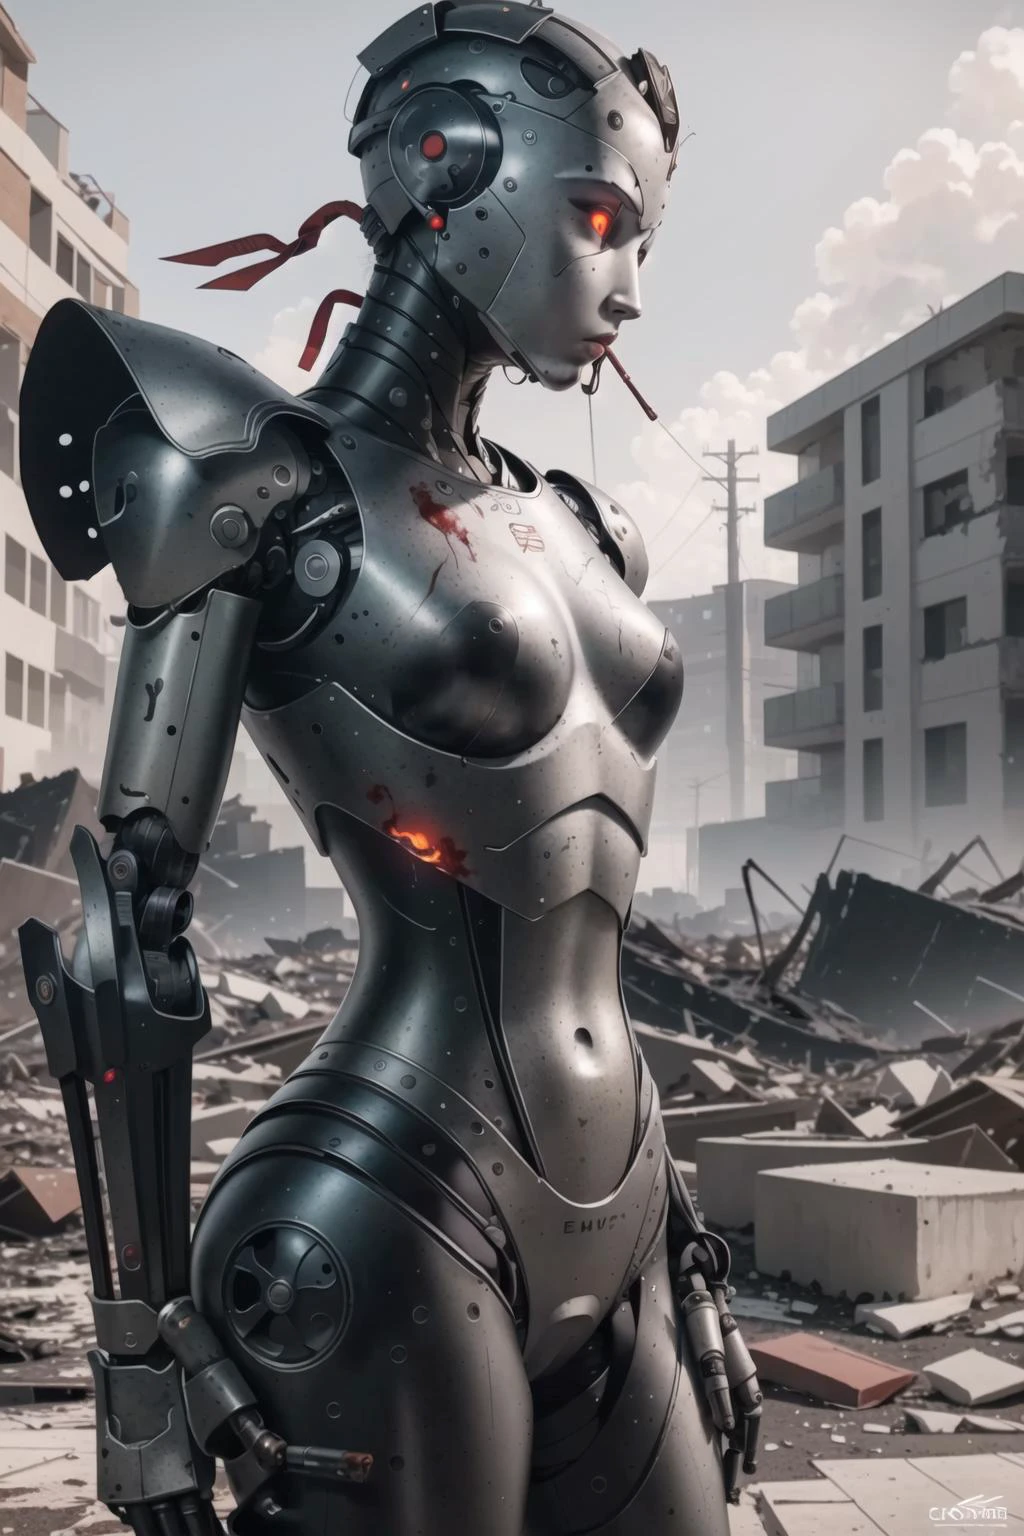 最好的品質, 錯綜複雜的細節,  (超寫實的數位插畫),(傑作:1.1),


 血, 被毀的風景, 碎片, 瓦砾, 背景有火, 抽烟, 斷肢, 可怕的氣氛, humanoid 機器人, 機器人, 機器人 關節, 關節, 头盔, 盔甲, 機器人 girl,